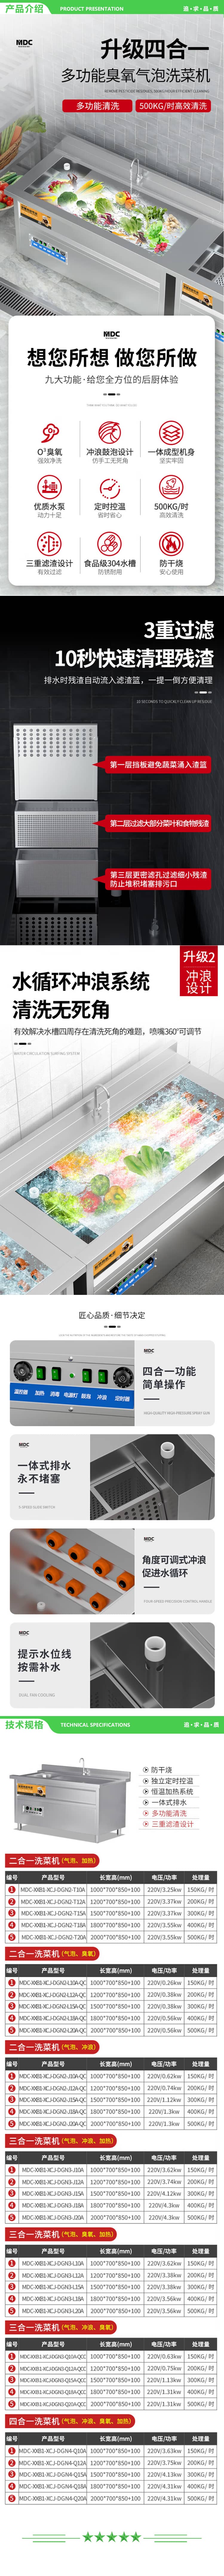 麦大厨 MDC-XXB1-XCJ-DGN2-T15A 商用洗菜机全自动多功能涡流加热气泡式食堂果蔬清洗机 2.jpg